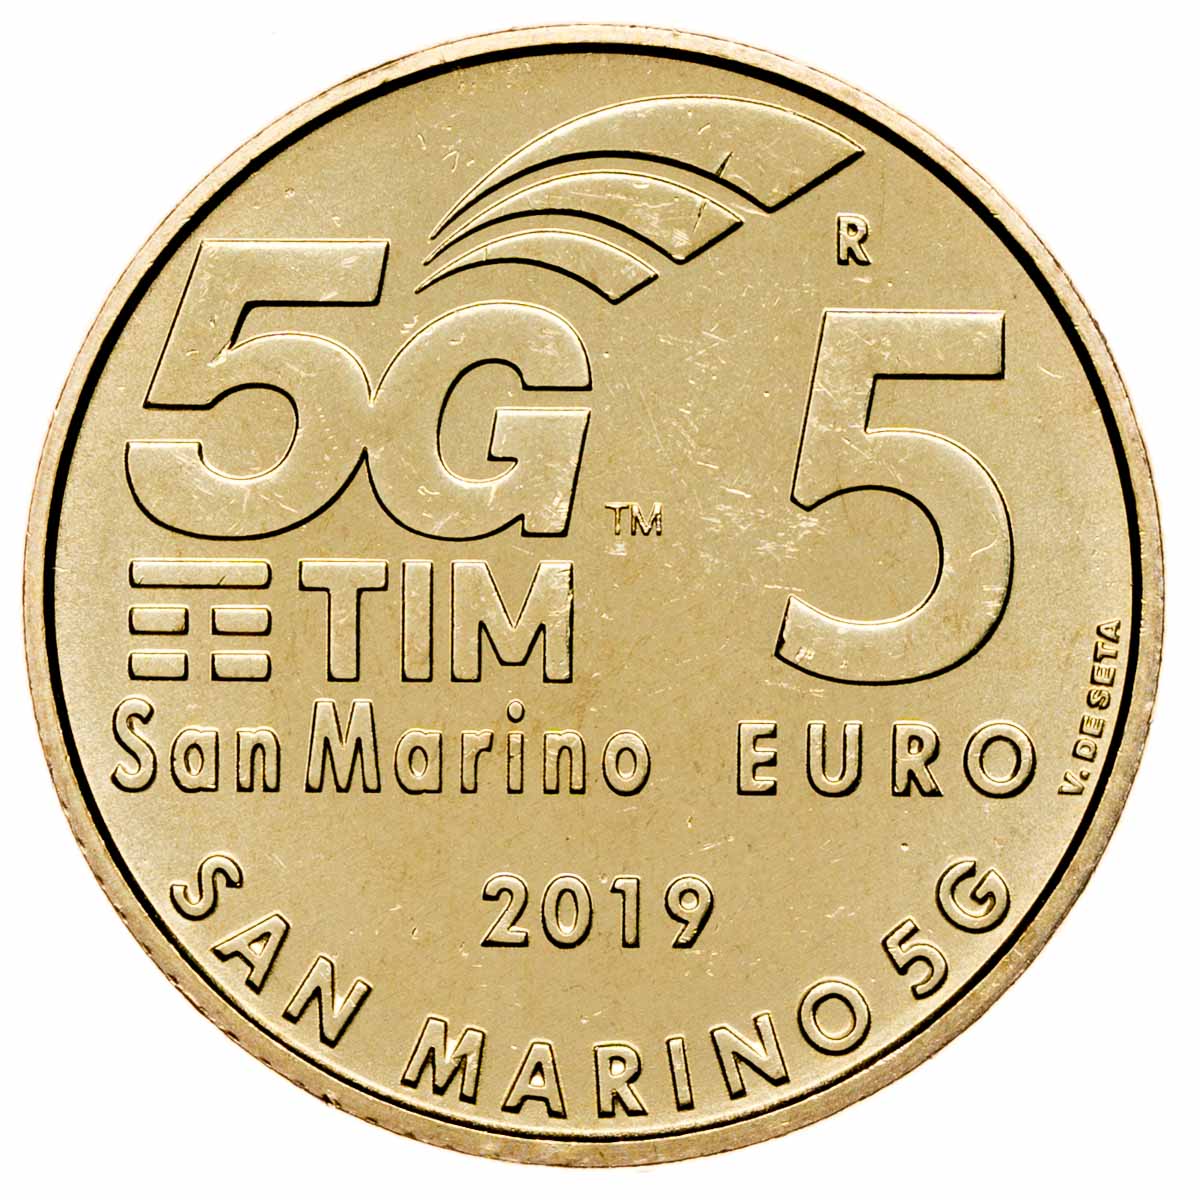 Евро сан марино. Сан-Марино, 2019 год, 5 евро, технология мобильной связи - 5g. 5 Евро Сан Марино. Валюта Сан Марино. 5 Евро 2019.